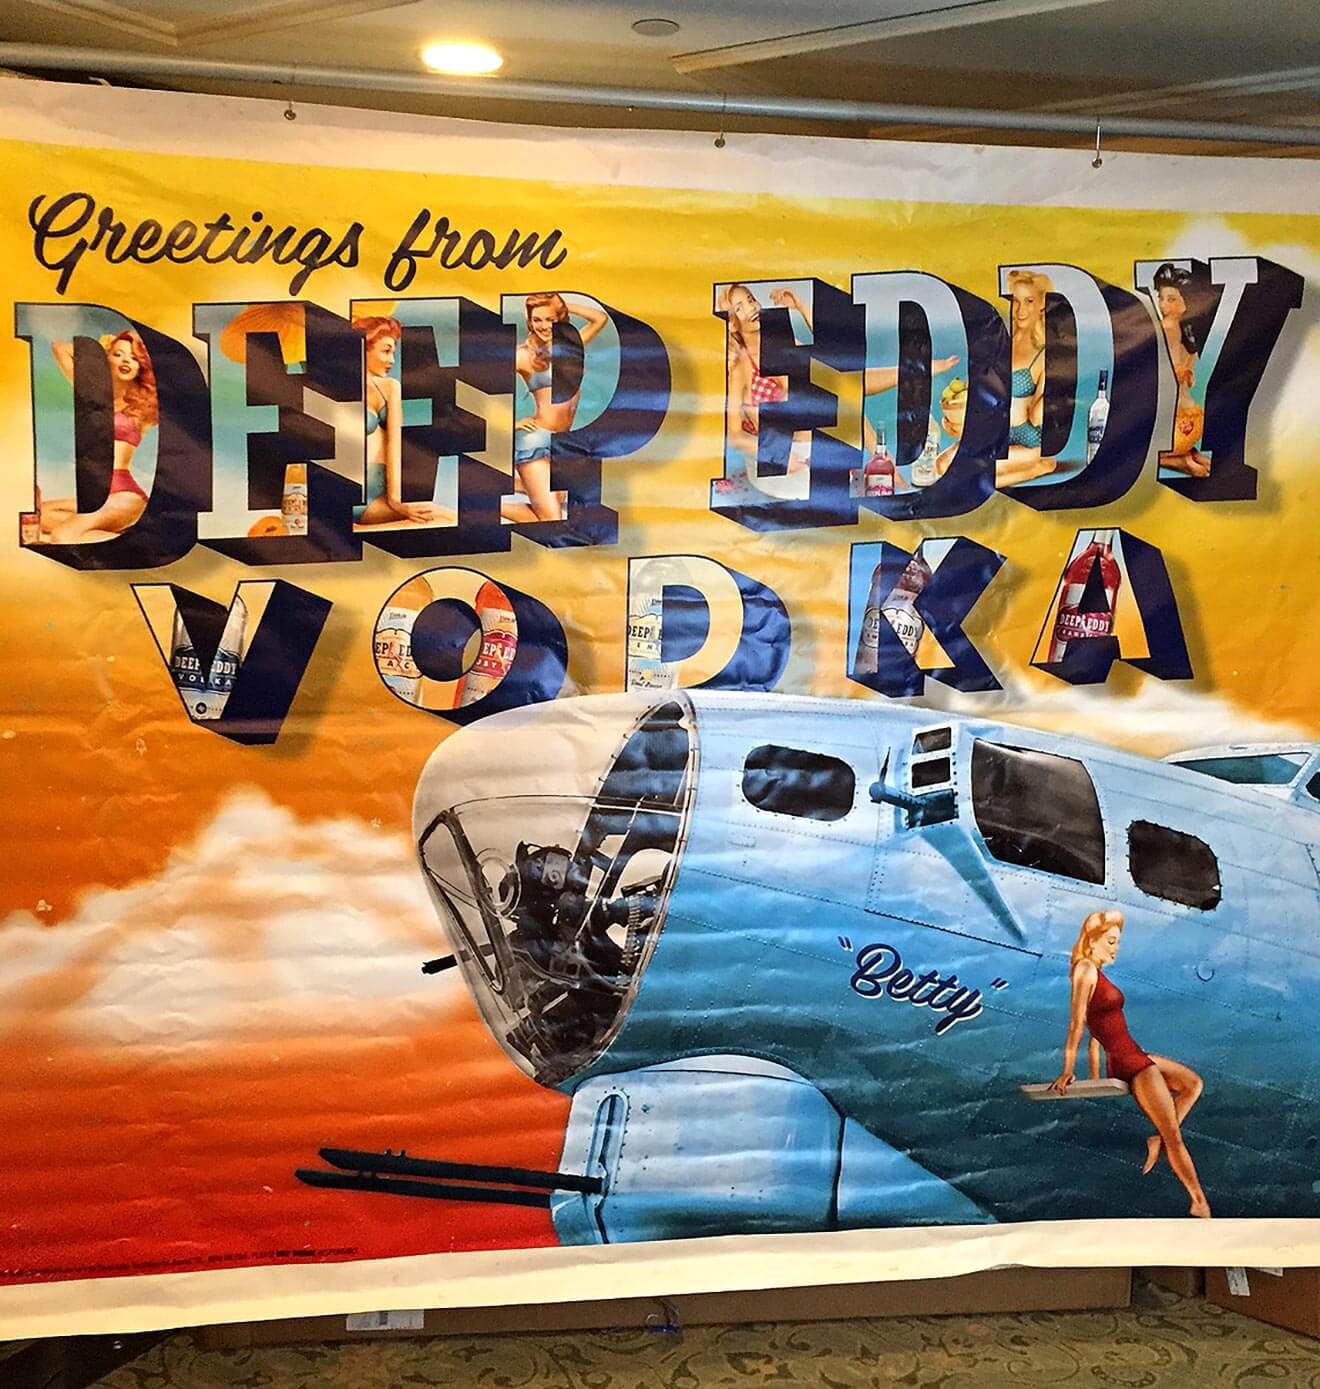 Deep-Eddy-Vodka-airplane-banner